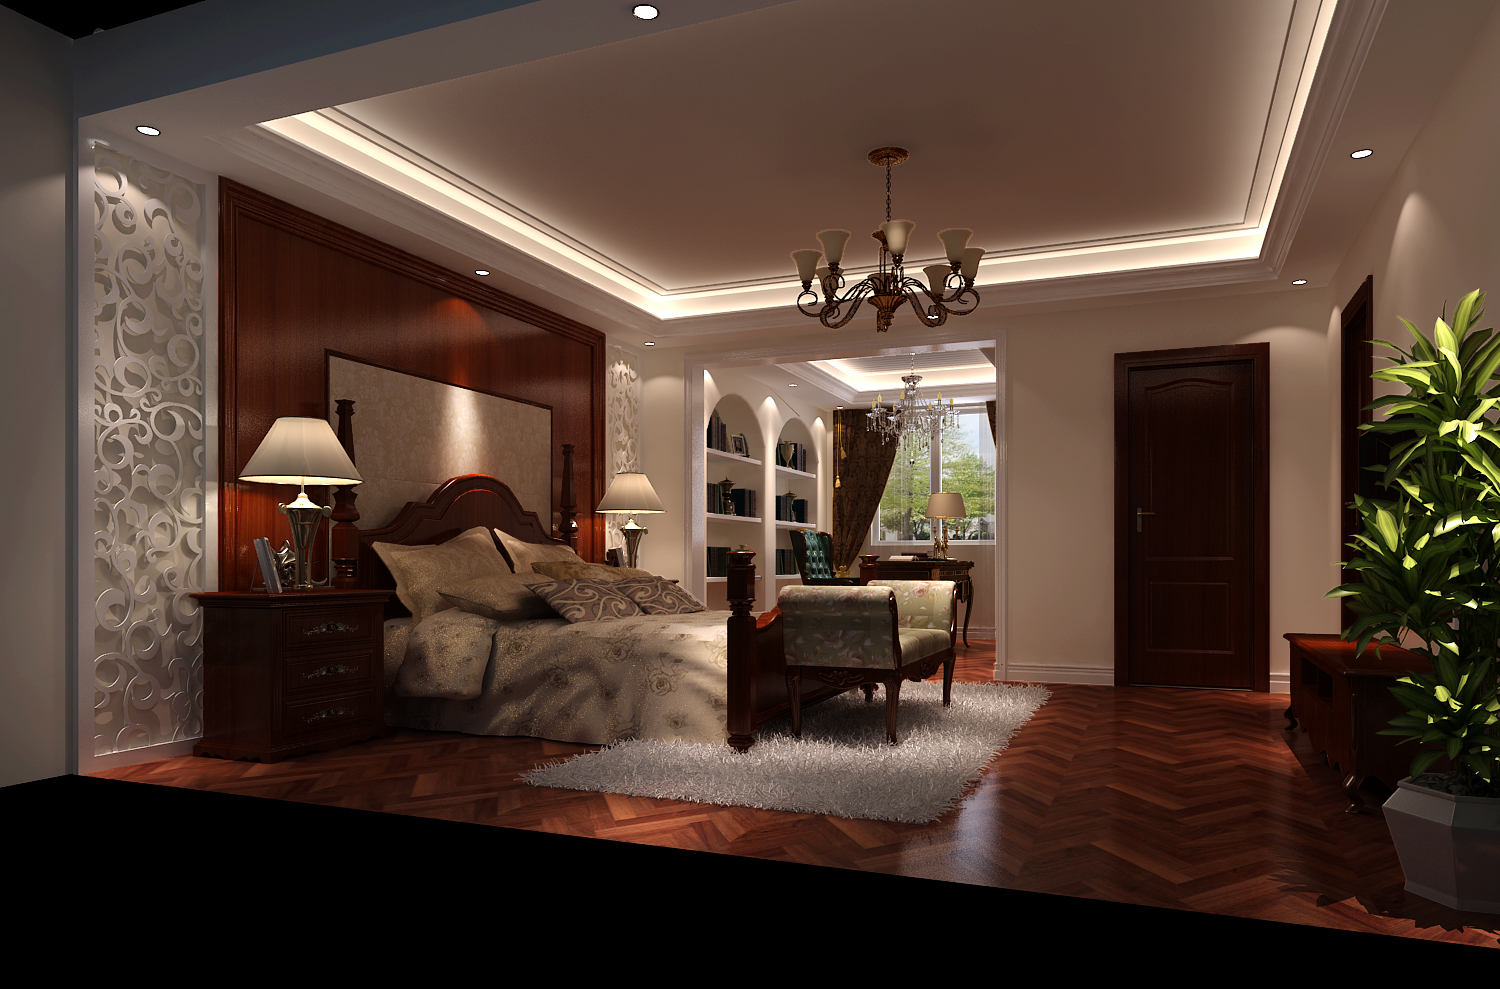 别墅 托斯卡纳 设计案例 效果图 卧室图片来自高度国际设计装饰在潮白河孔雀城托斯卡纳设计案例的分享